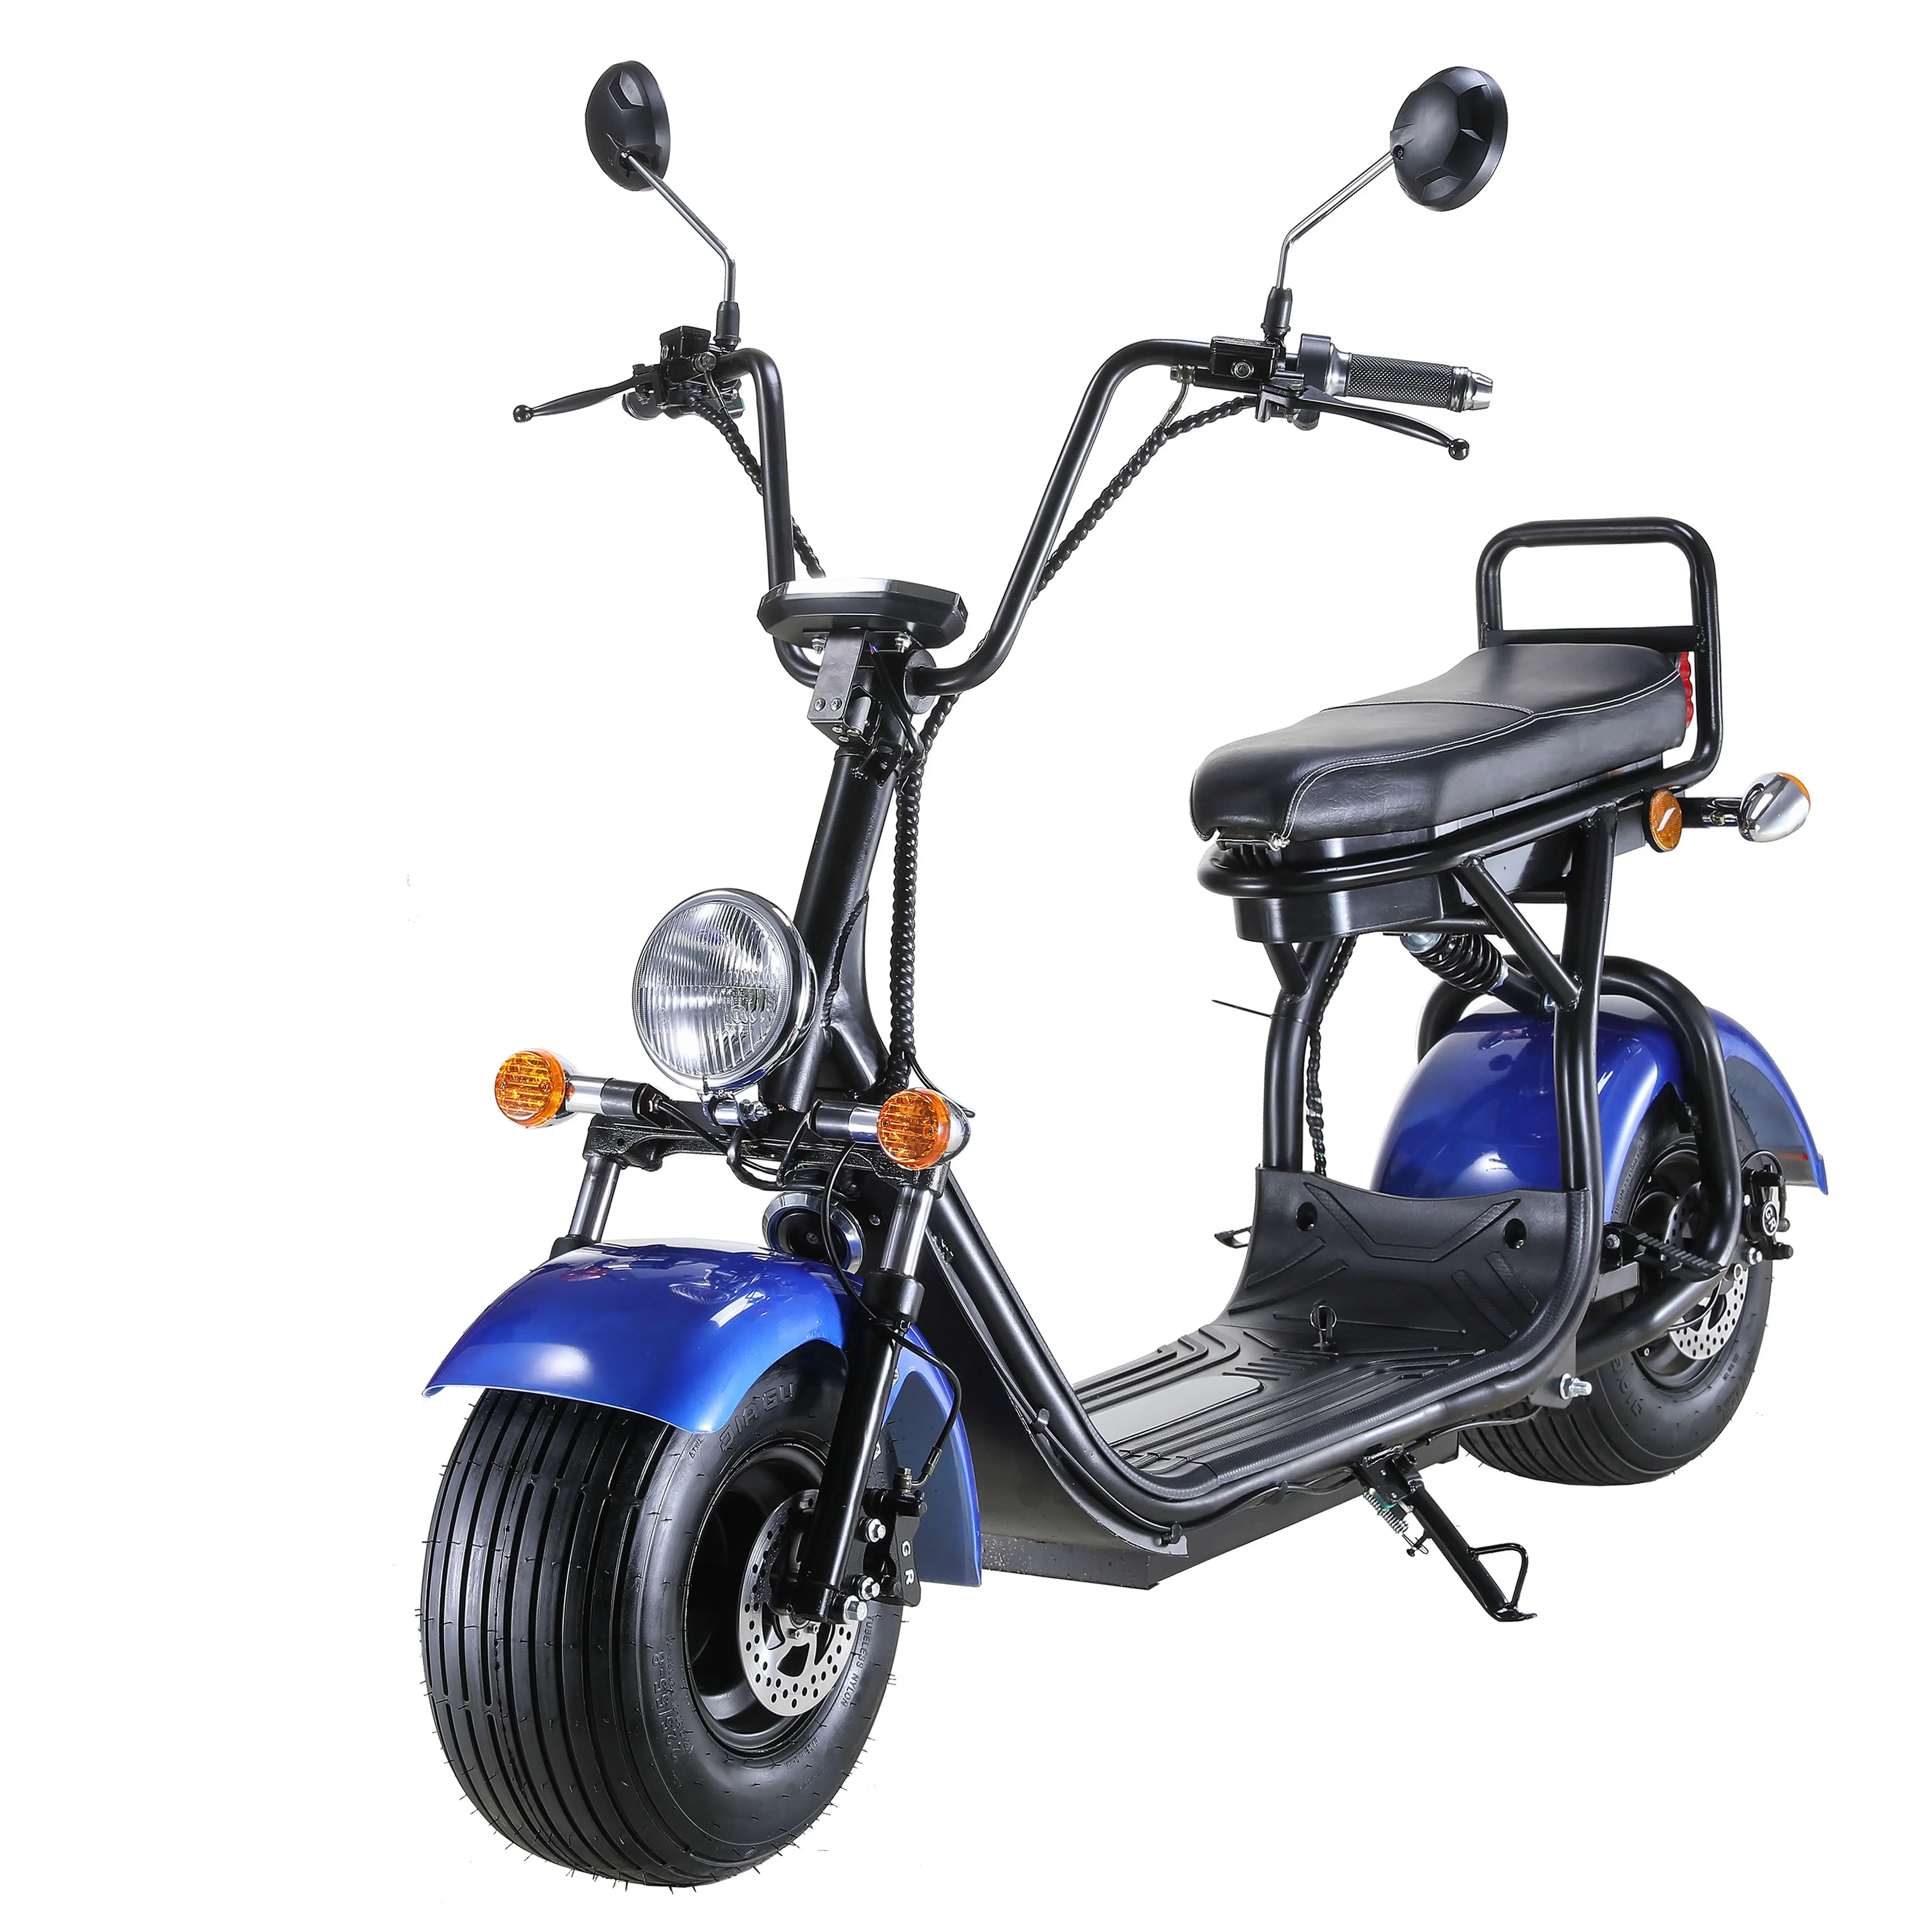 Лучший китайский бренд Nzita special mobility, новый электрический мотоцикл 350 Вт, Электрический скутер ЕС, дешевый Электрический велосипед